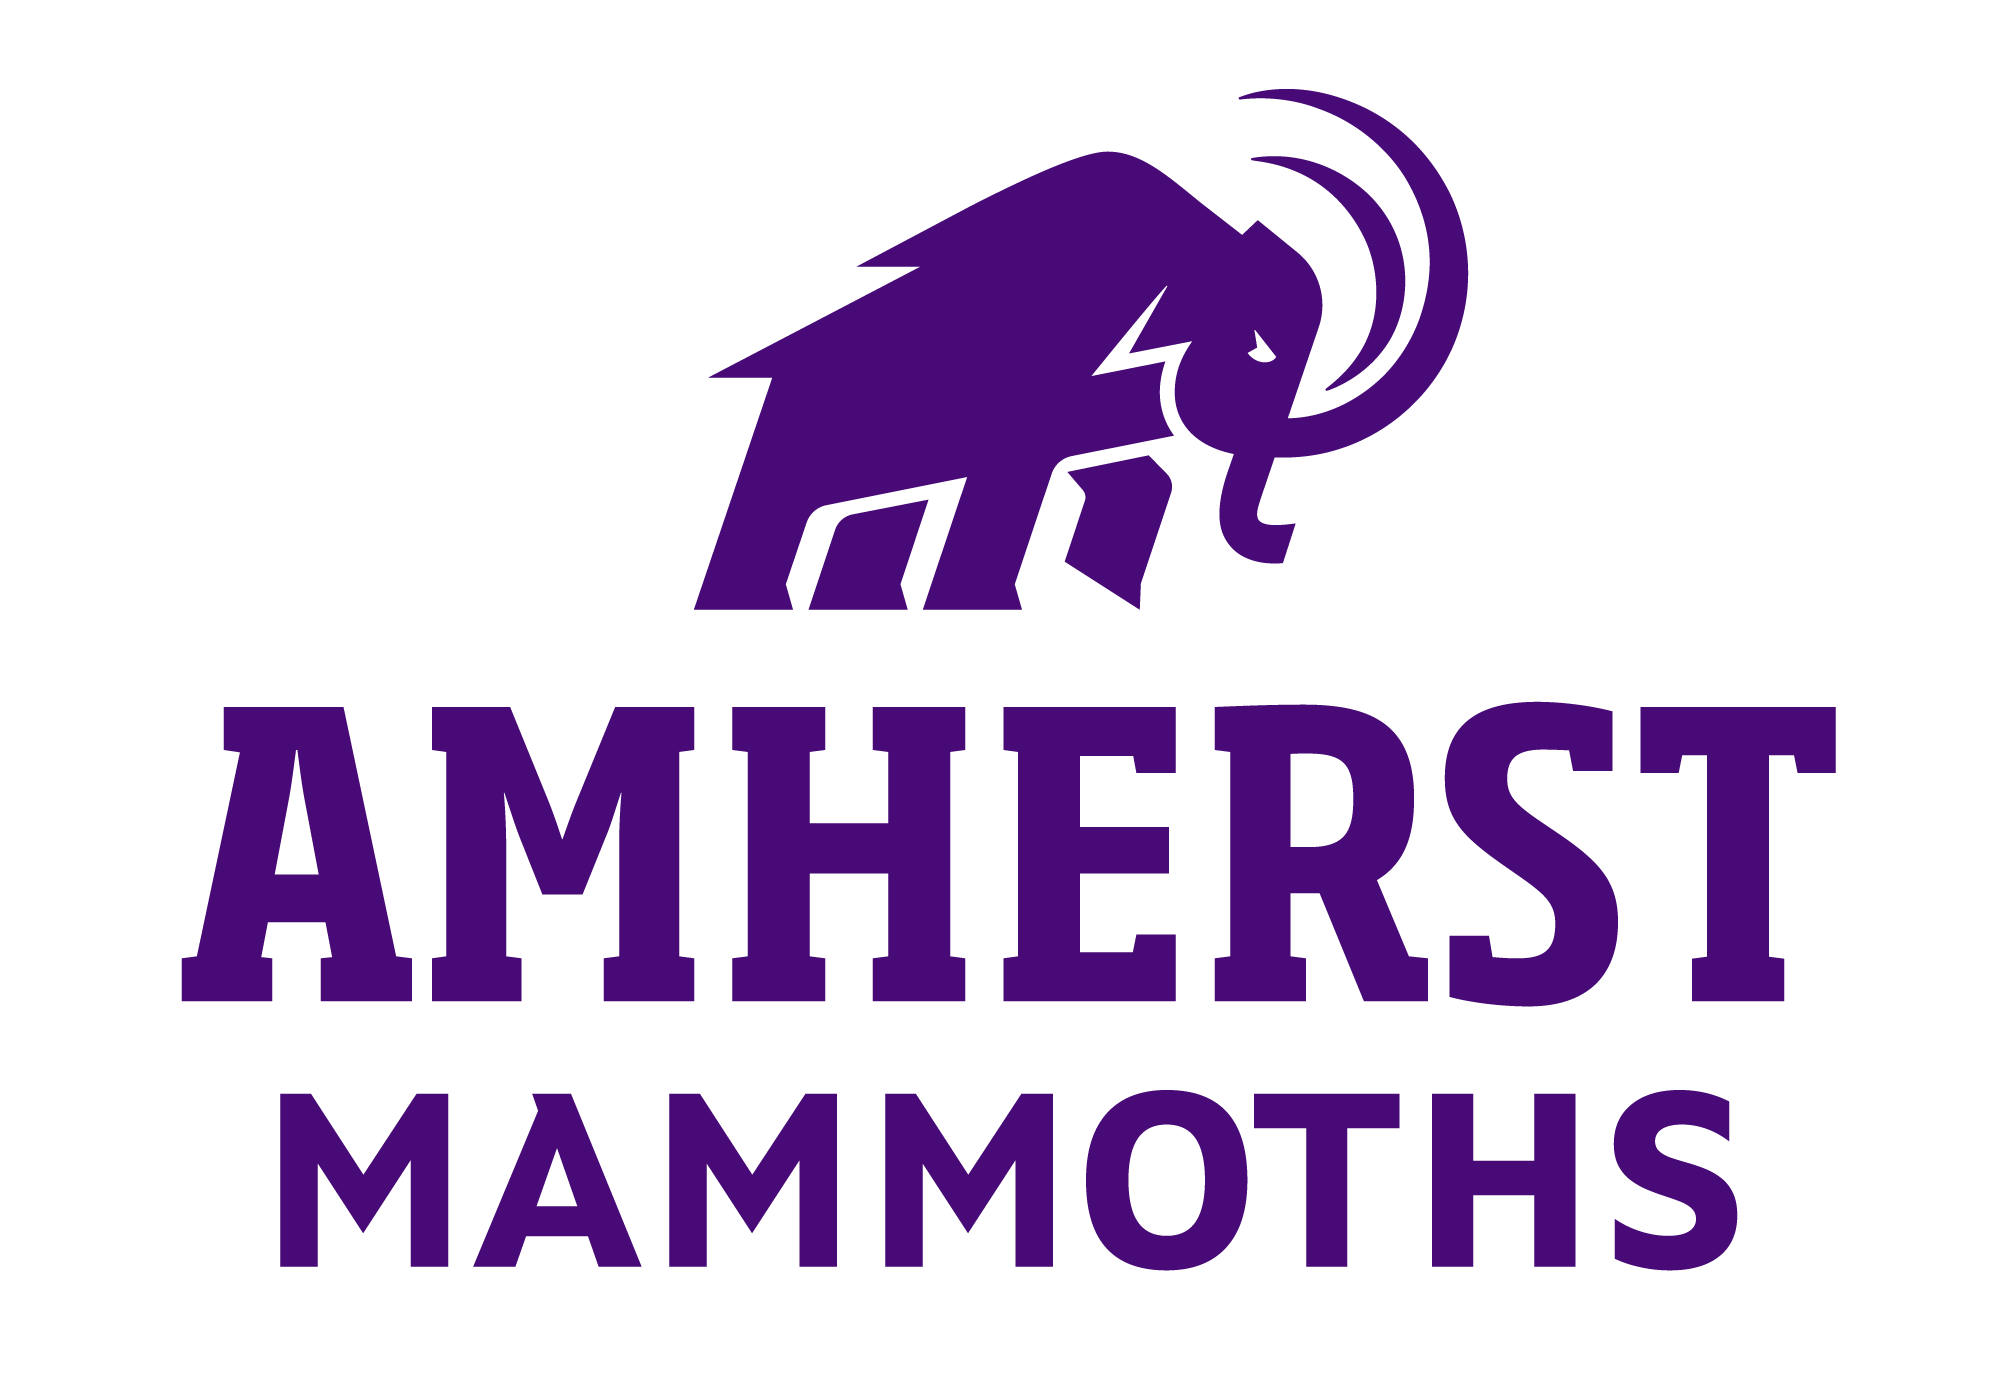 Mammoths slow down Blazers, 9-6 - Amherst College